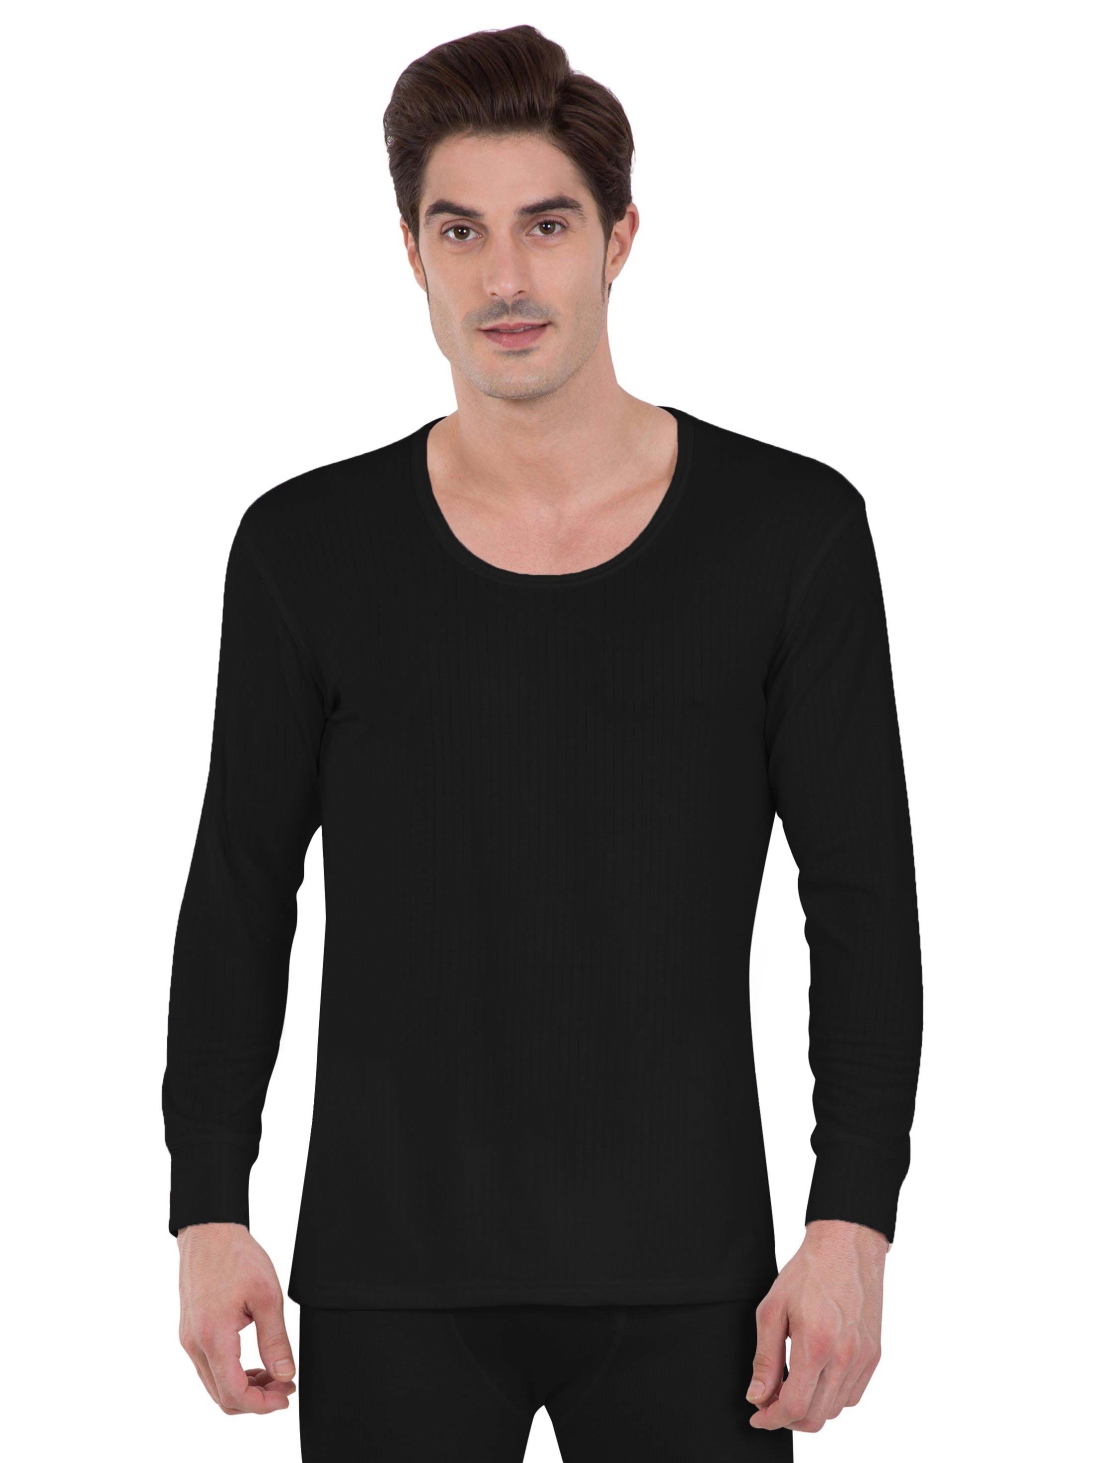 Buy Jockey Black Long Sleeve Vest For Men Online @ ₹909 from ShopClues